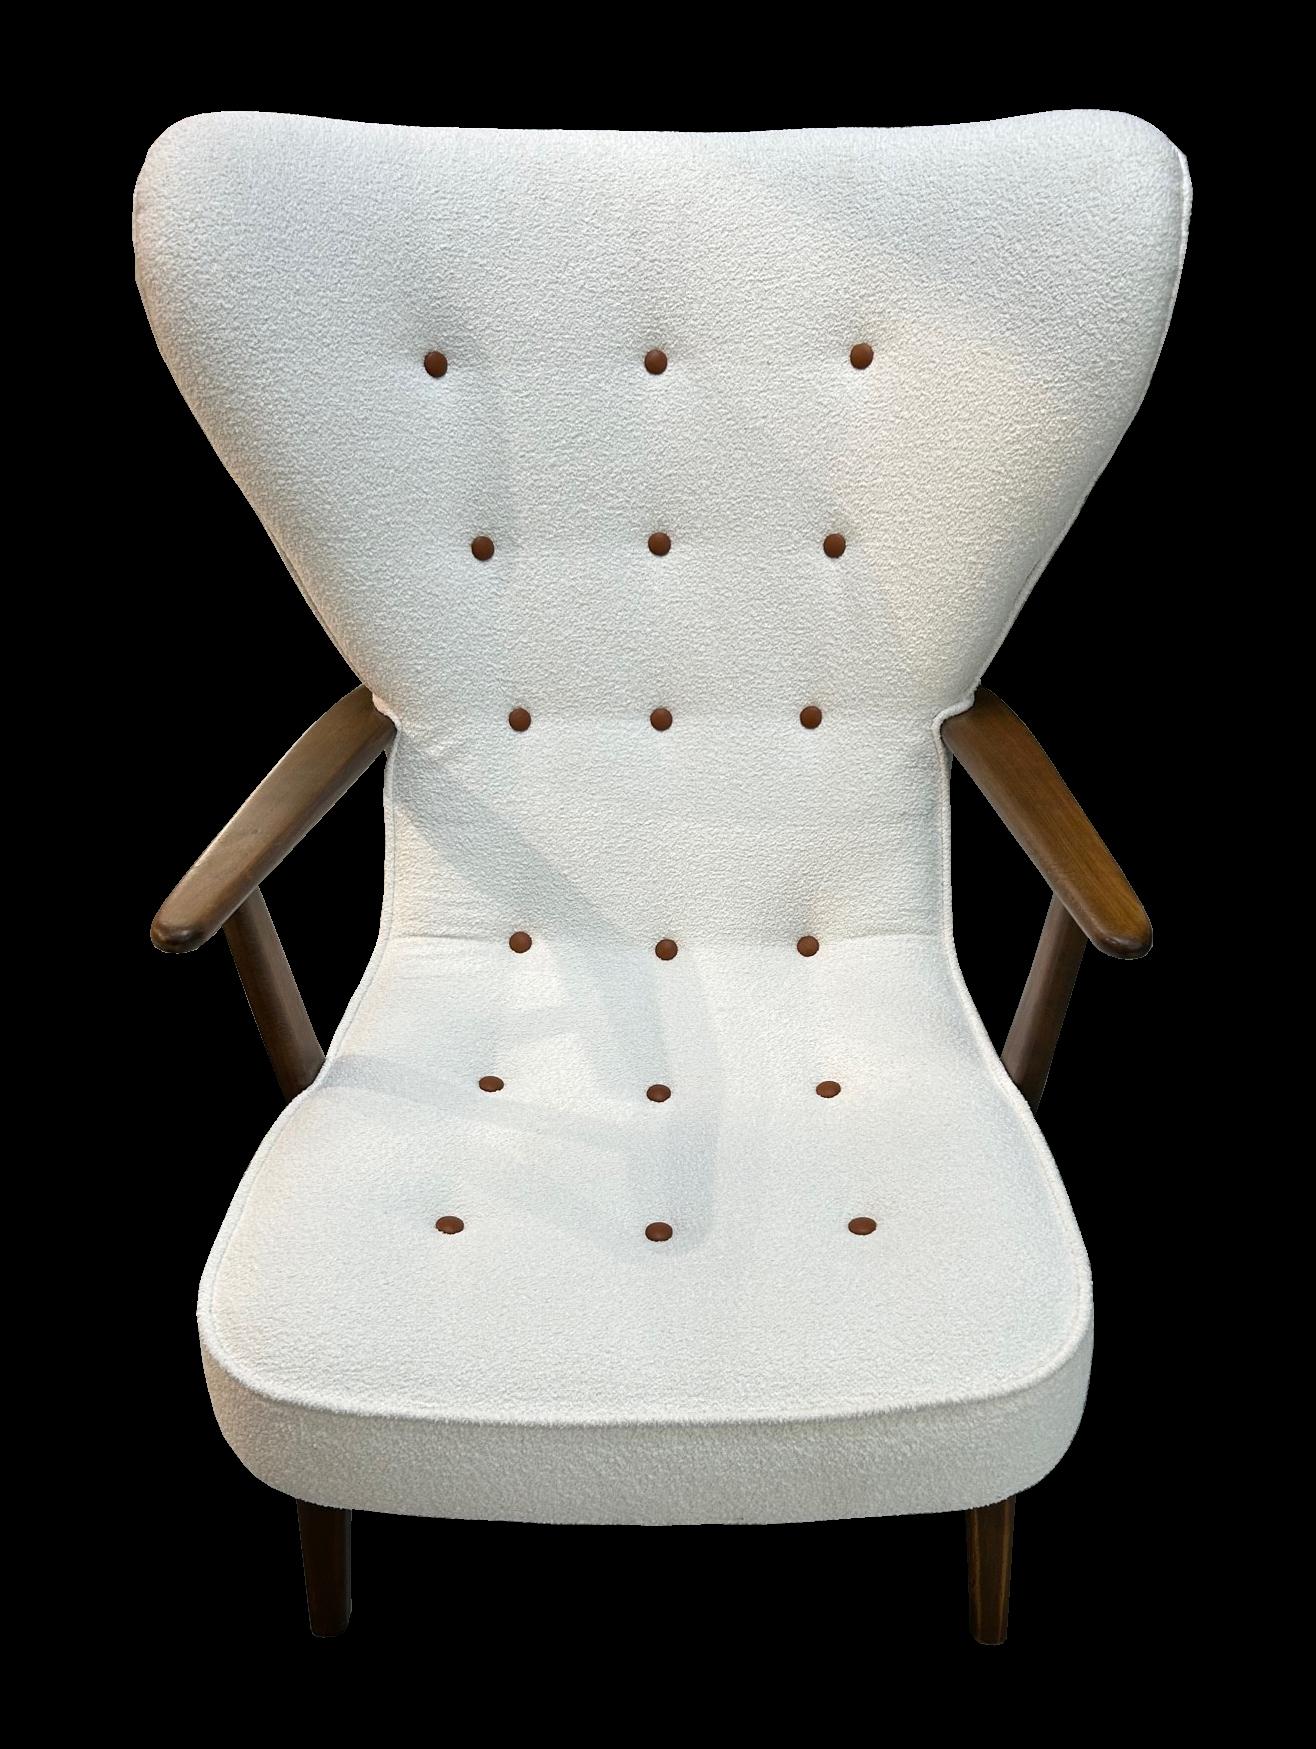 Scandinavian Modern Pragh Lounge Chair and Ottoman by Madsen & Schubell For Sale